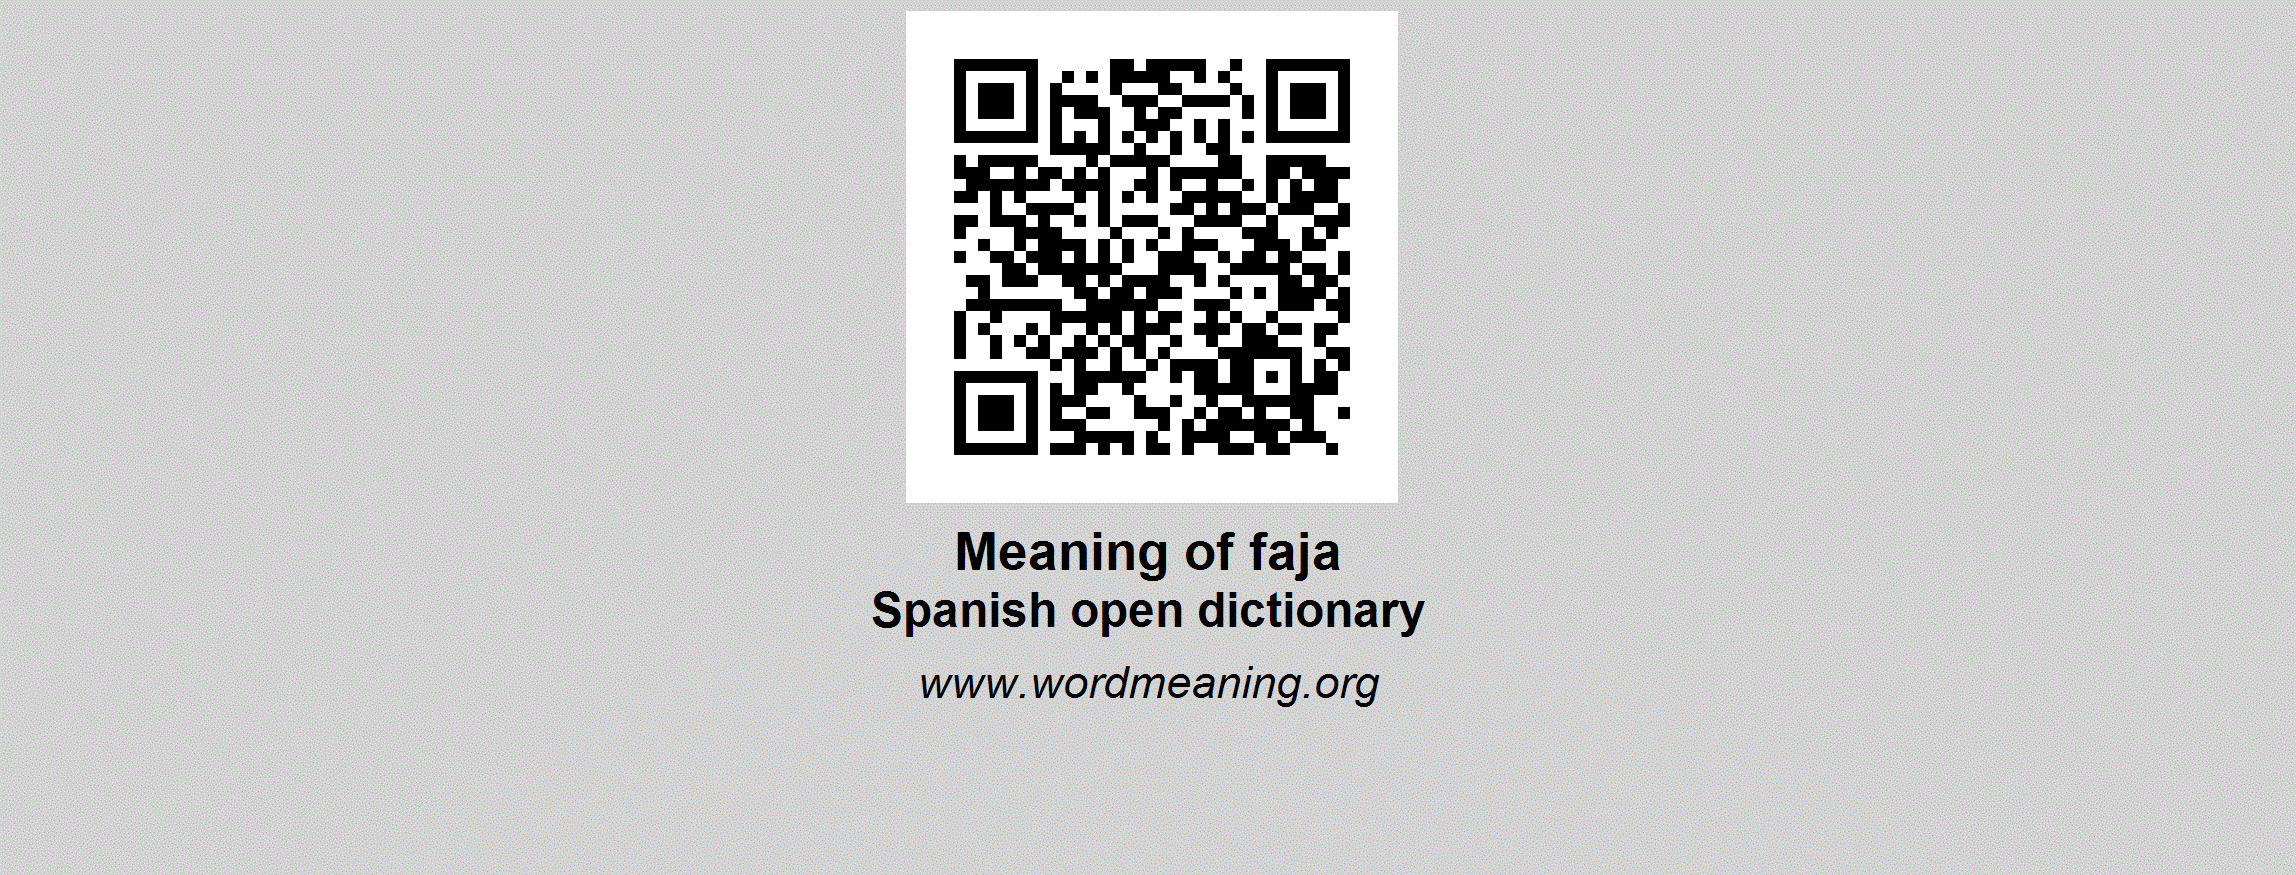 FAJA - Spanish open dictionary